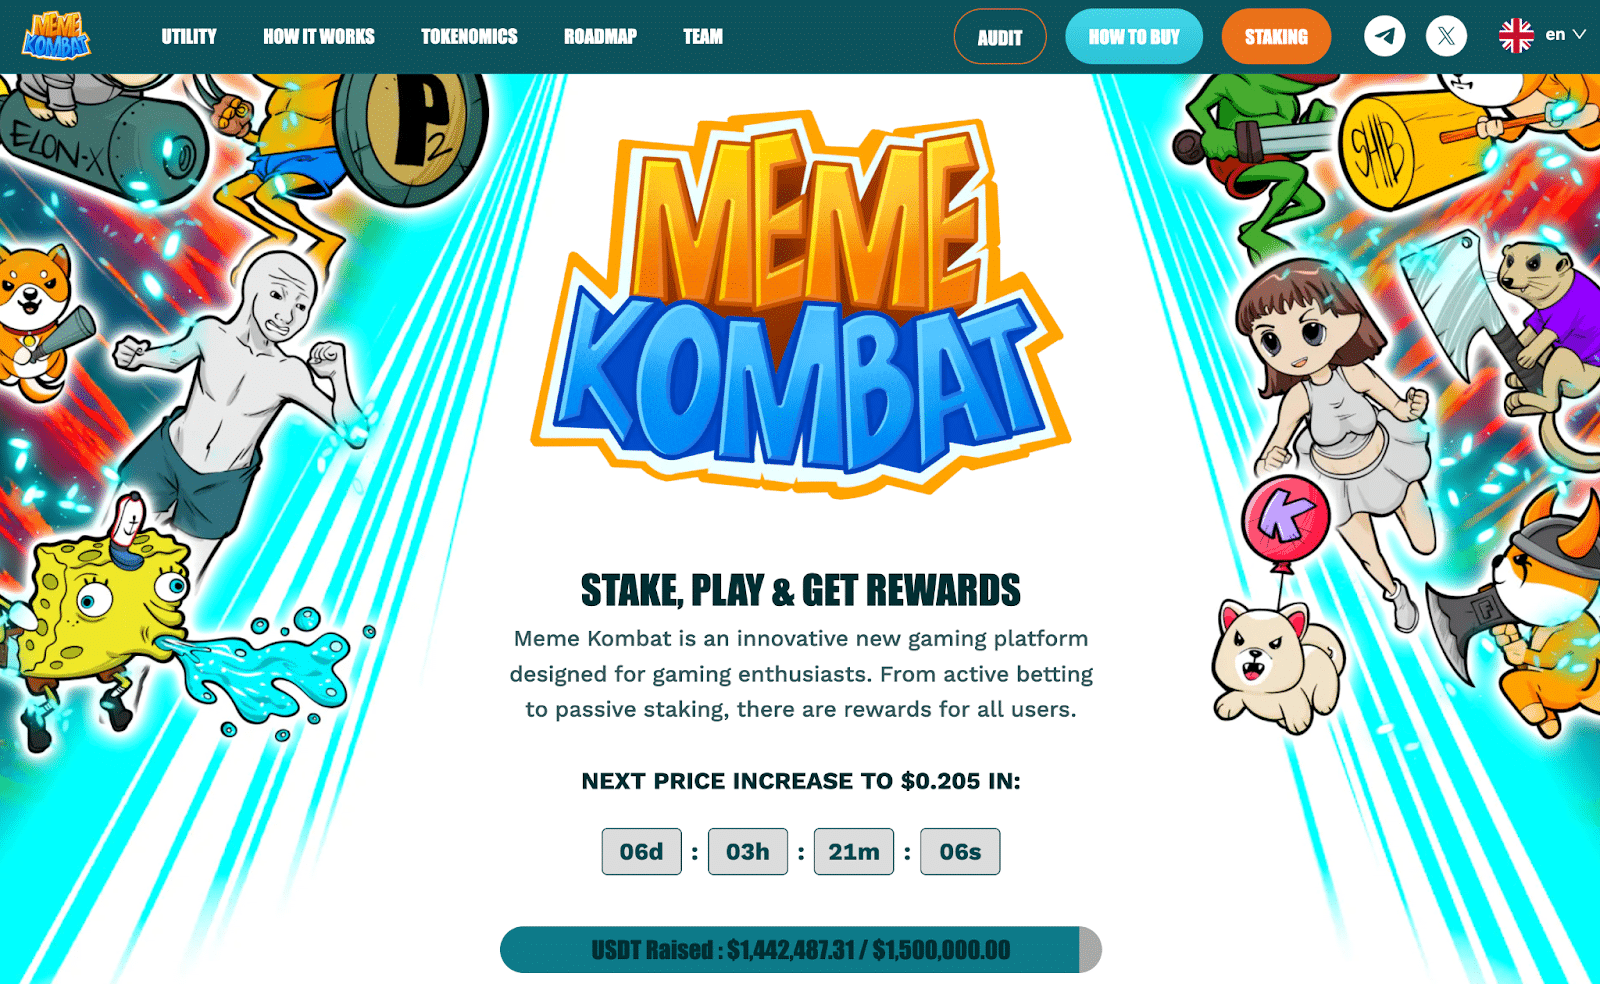 黄金甲体育平台app下载Pepepe币价格上涨25%Meme Kombat在独特的游戏平台上筹集了近150万美元　也许会有100倍的增加